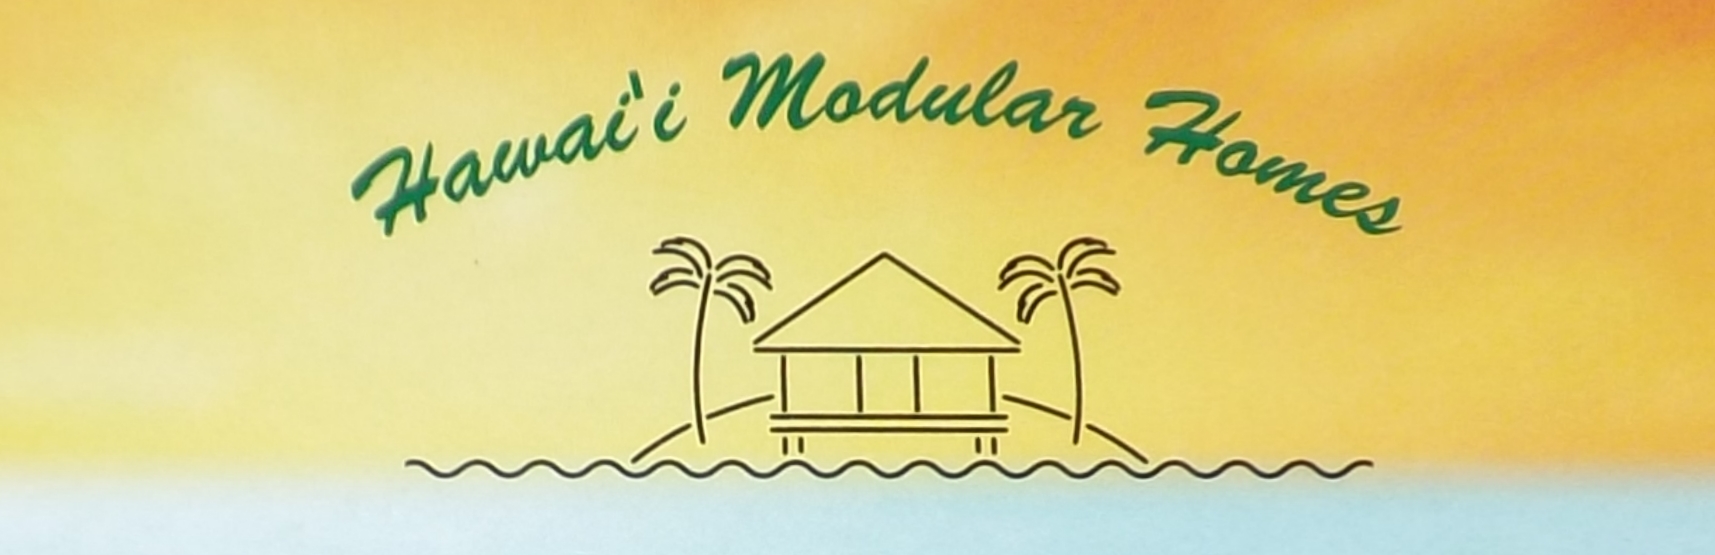 Hawaii Modular Homes